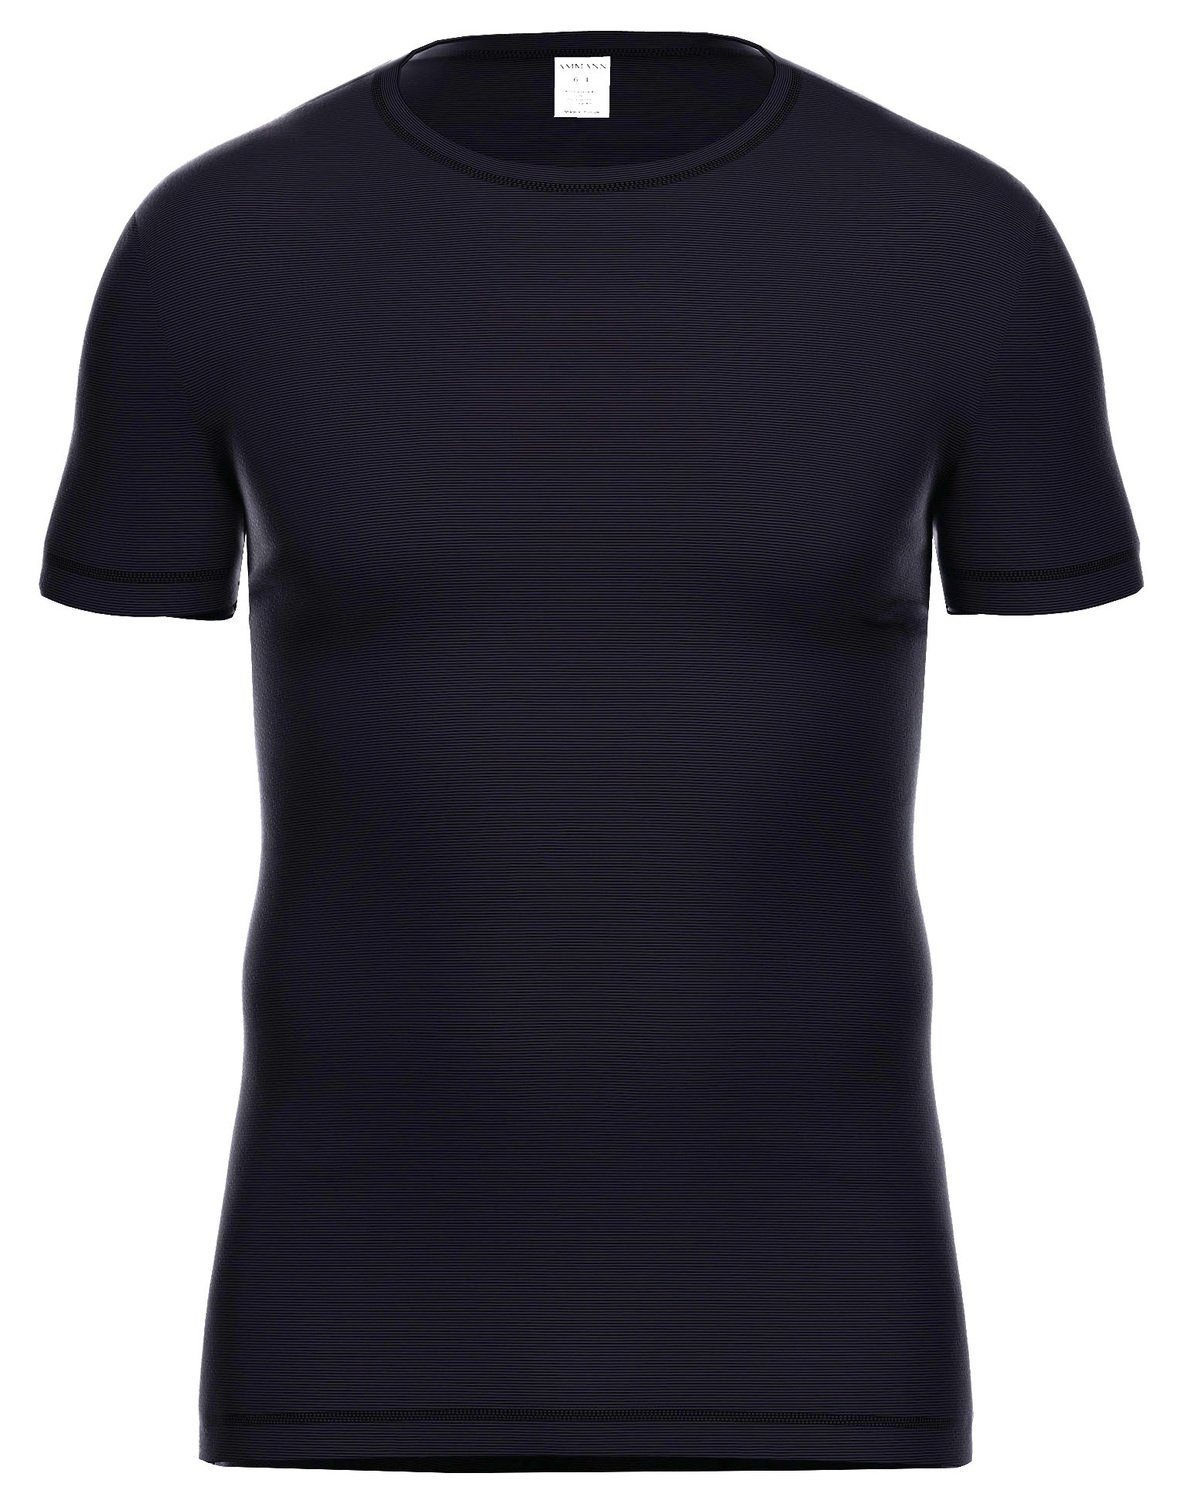 Ammann Unterhemd 197 Dunova Shirt 1/2 Arm